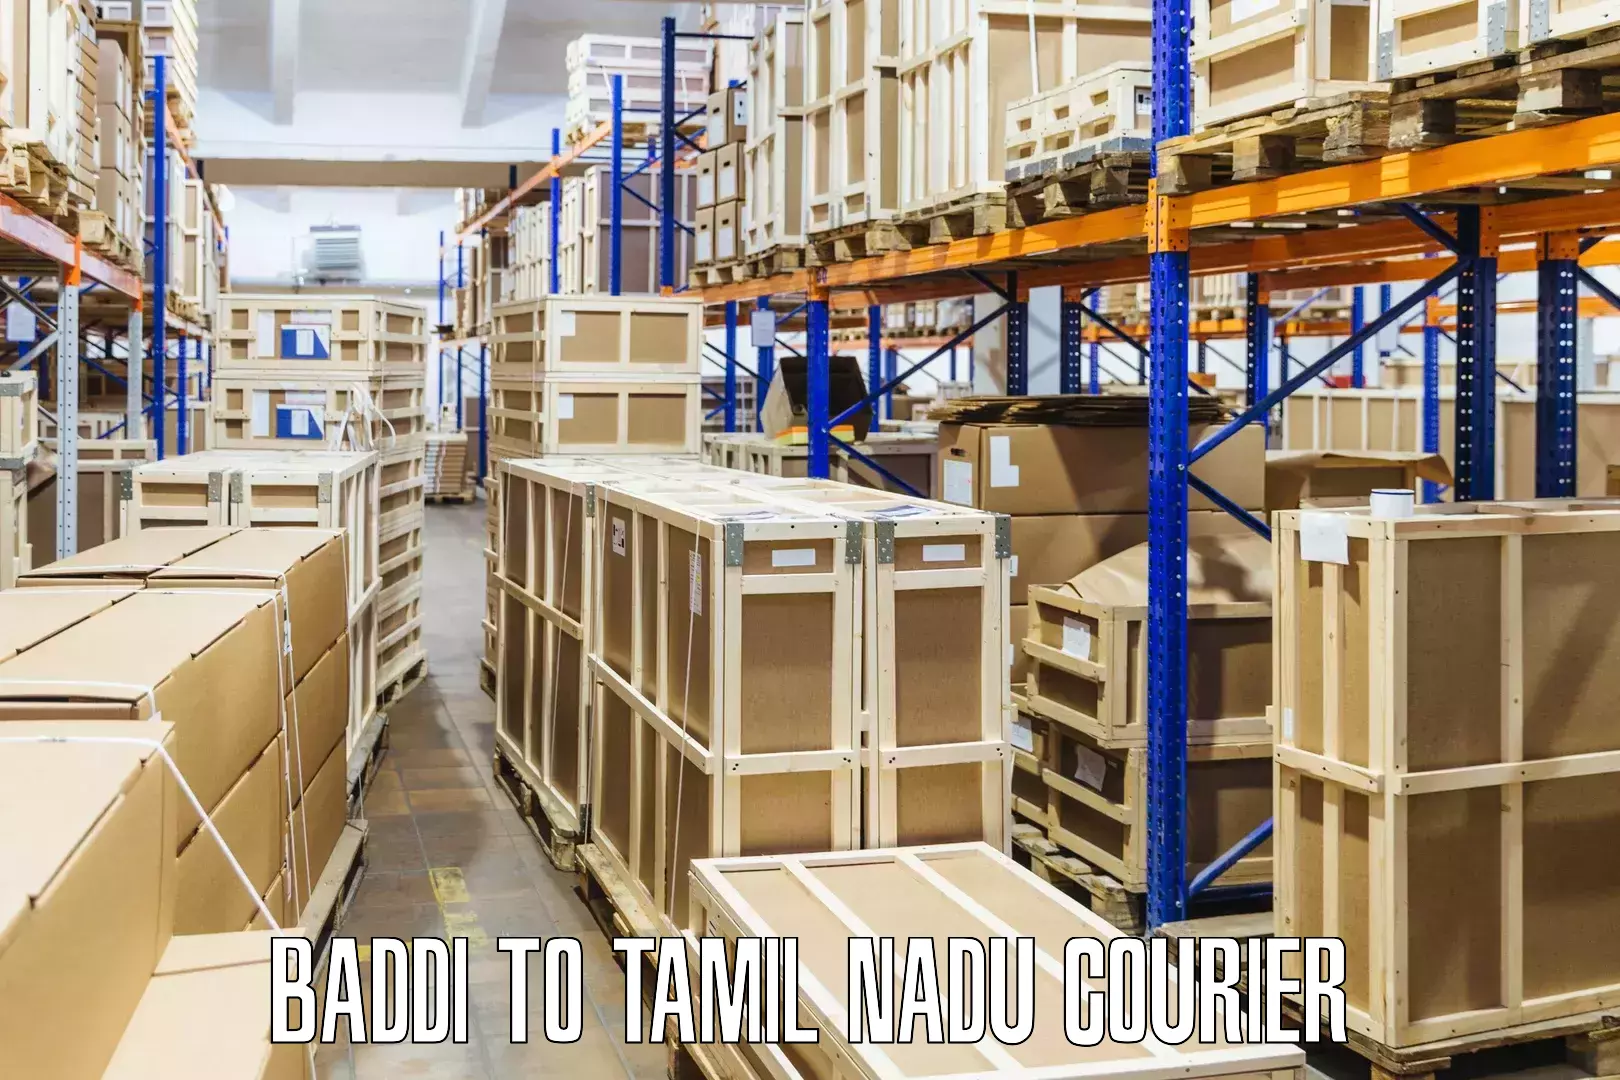 Nationwide parcel services Baddi to Tirukalukundram